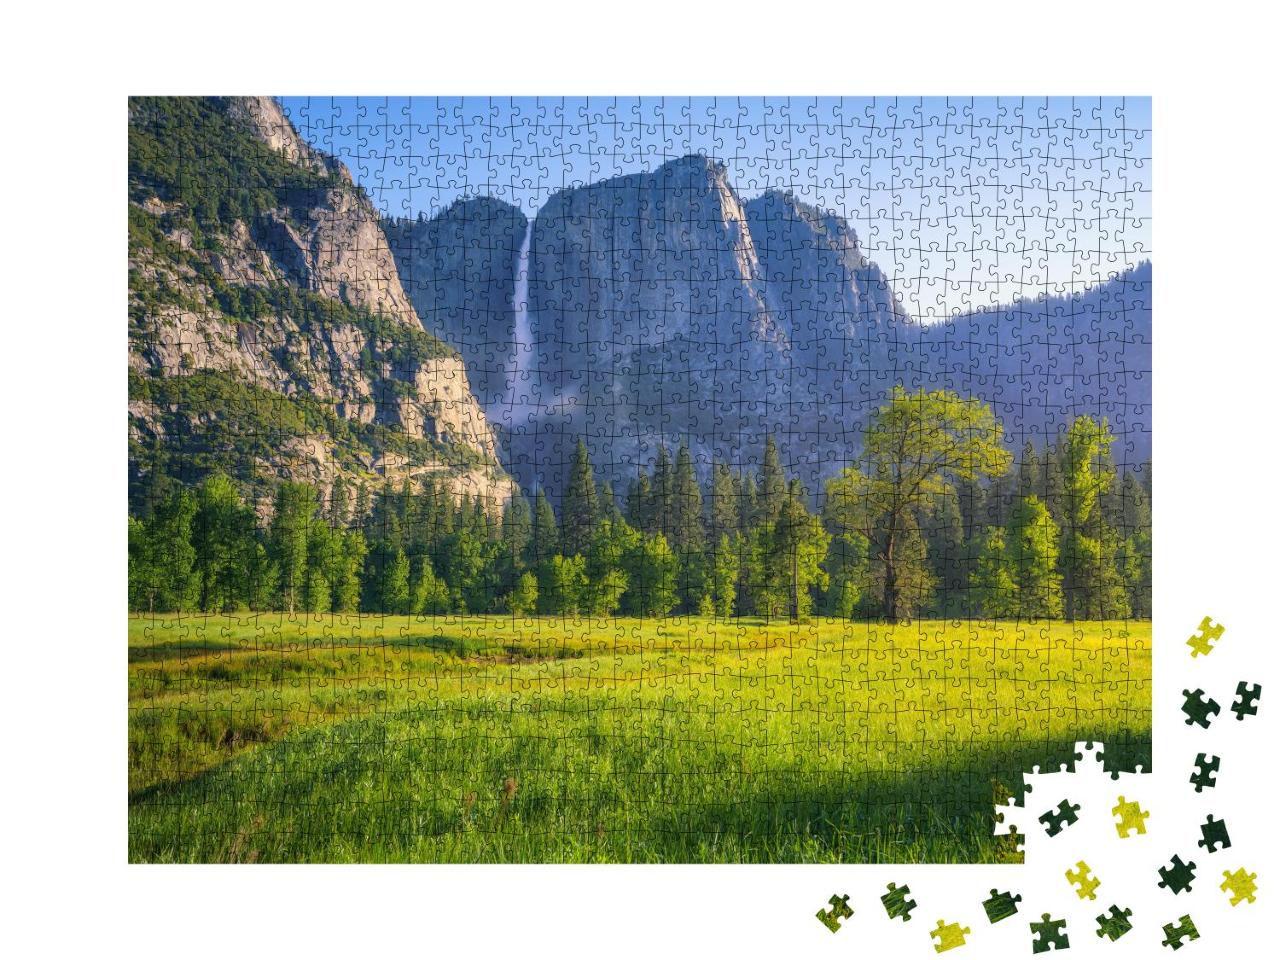 Puzzle 1000 Teile „Beeindruckende Yosemite Wasserfälle, Kalifornien, USA“